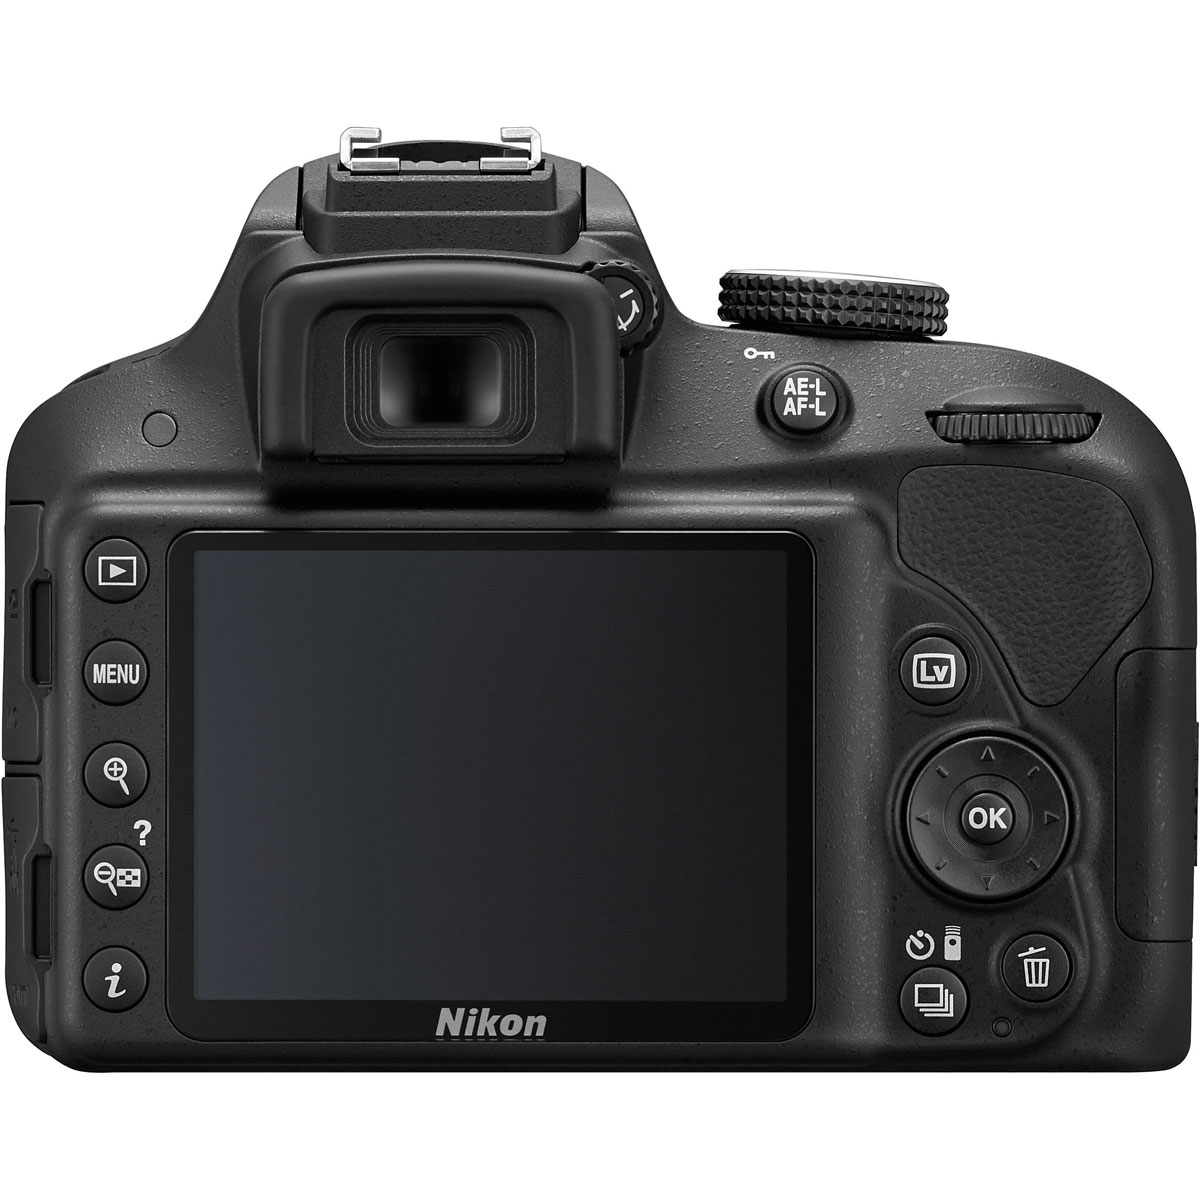 Nikon D3300 KIT with AF-S 18-55mm VR II 